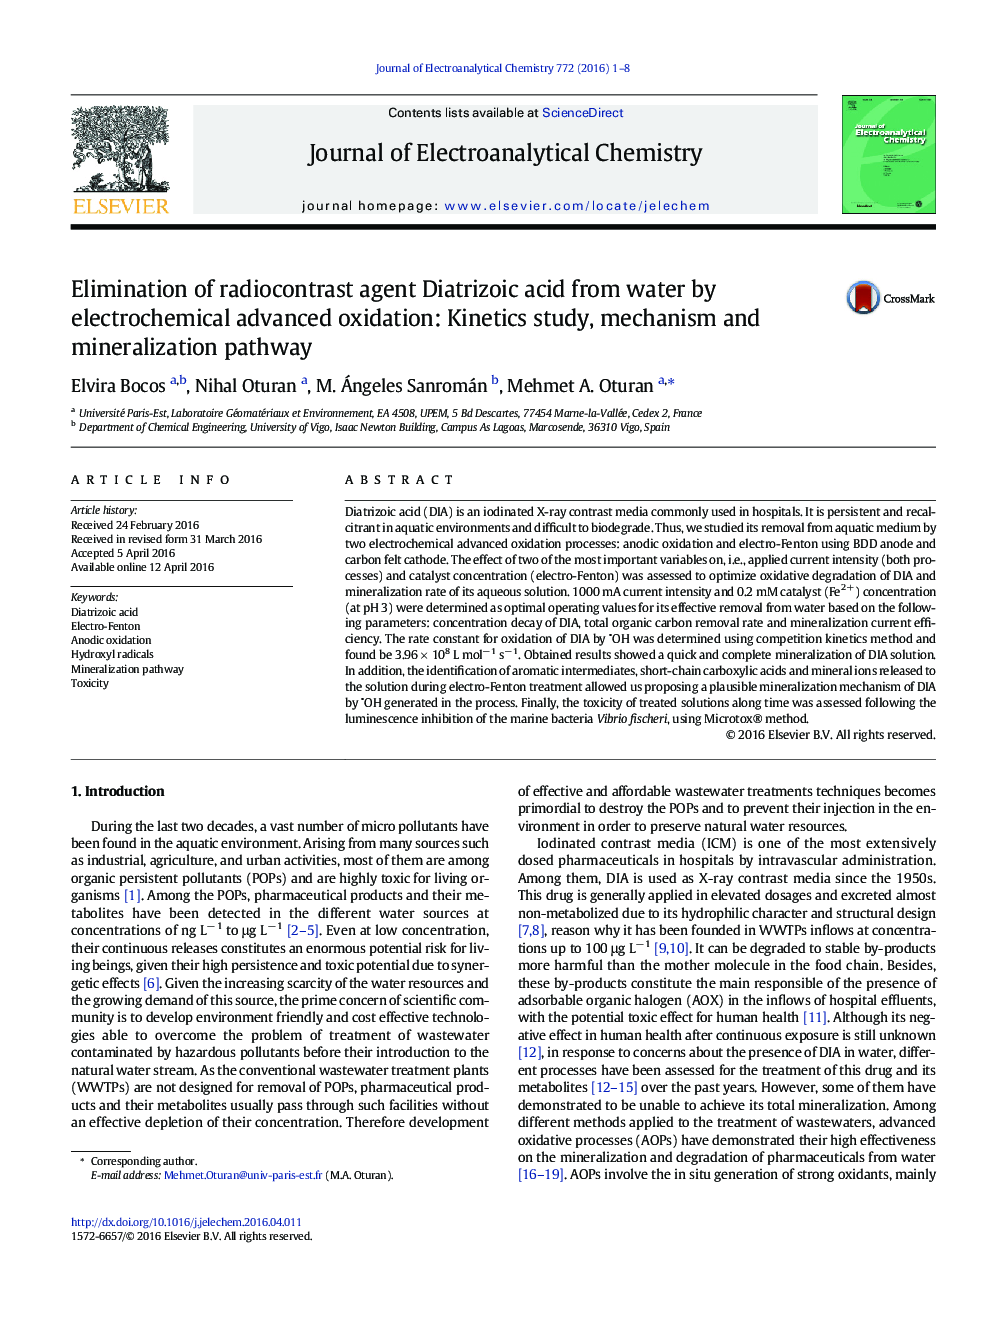 از بین بردن اسید دیتریت زائو از آب با اکسیداسیون پیشرفته الکتروشیمیایی: مطالعه سینتیک، مکانیزم و مسیر کانی سازی 